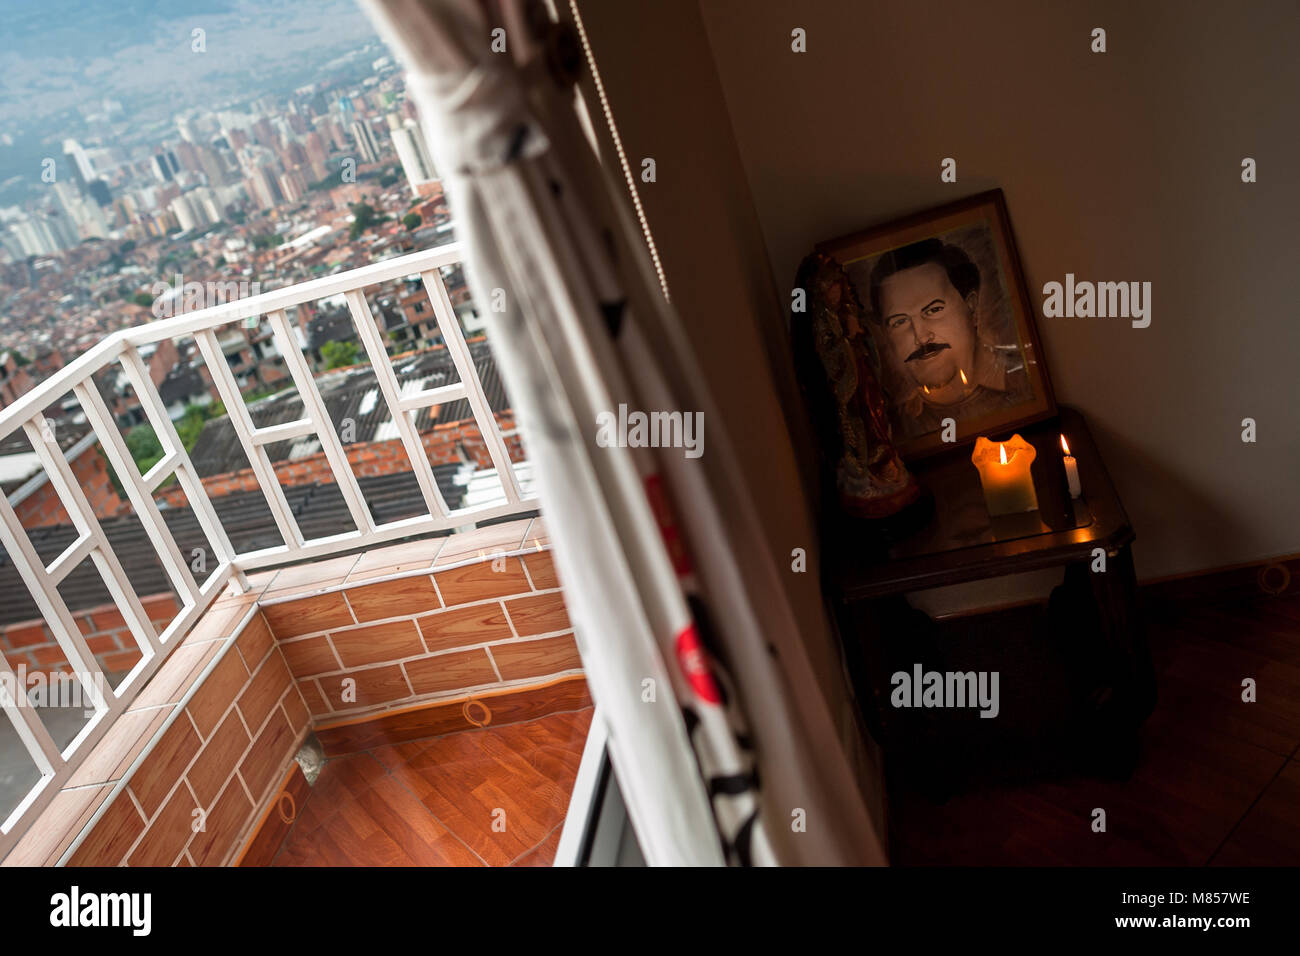 Un autel en l'honneur du seigneur de la drogue Pablo Escobar est vu placé dans la salle de séjour coin d'une maison à Medellín, Colombie. Banque D'Images